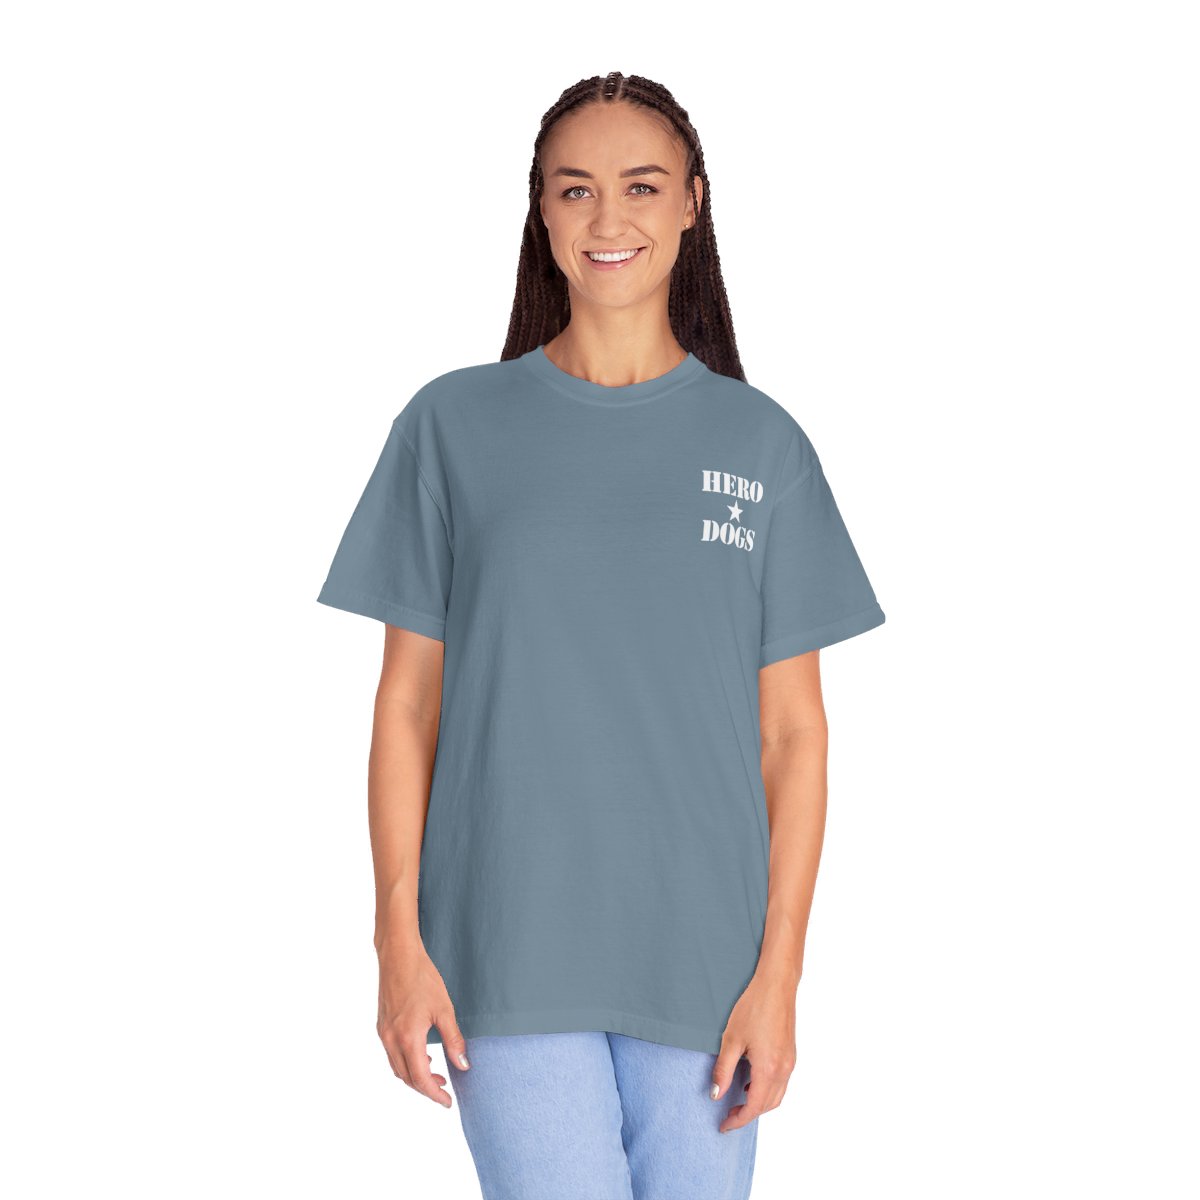 Unisex Garment-Dyed T-shirt product thumbnail image